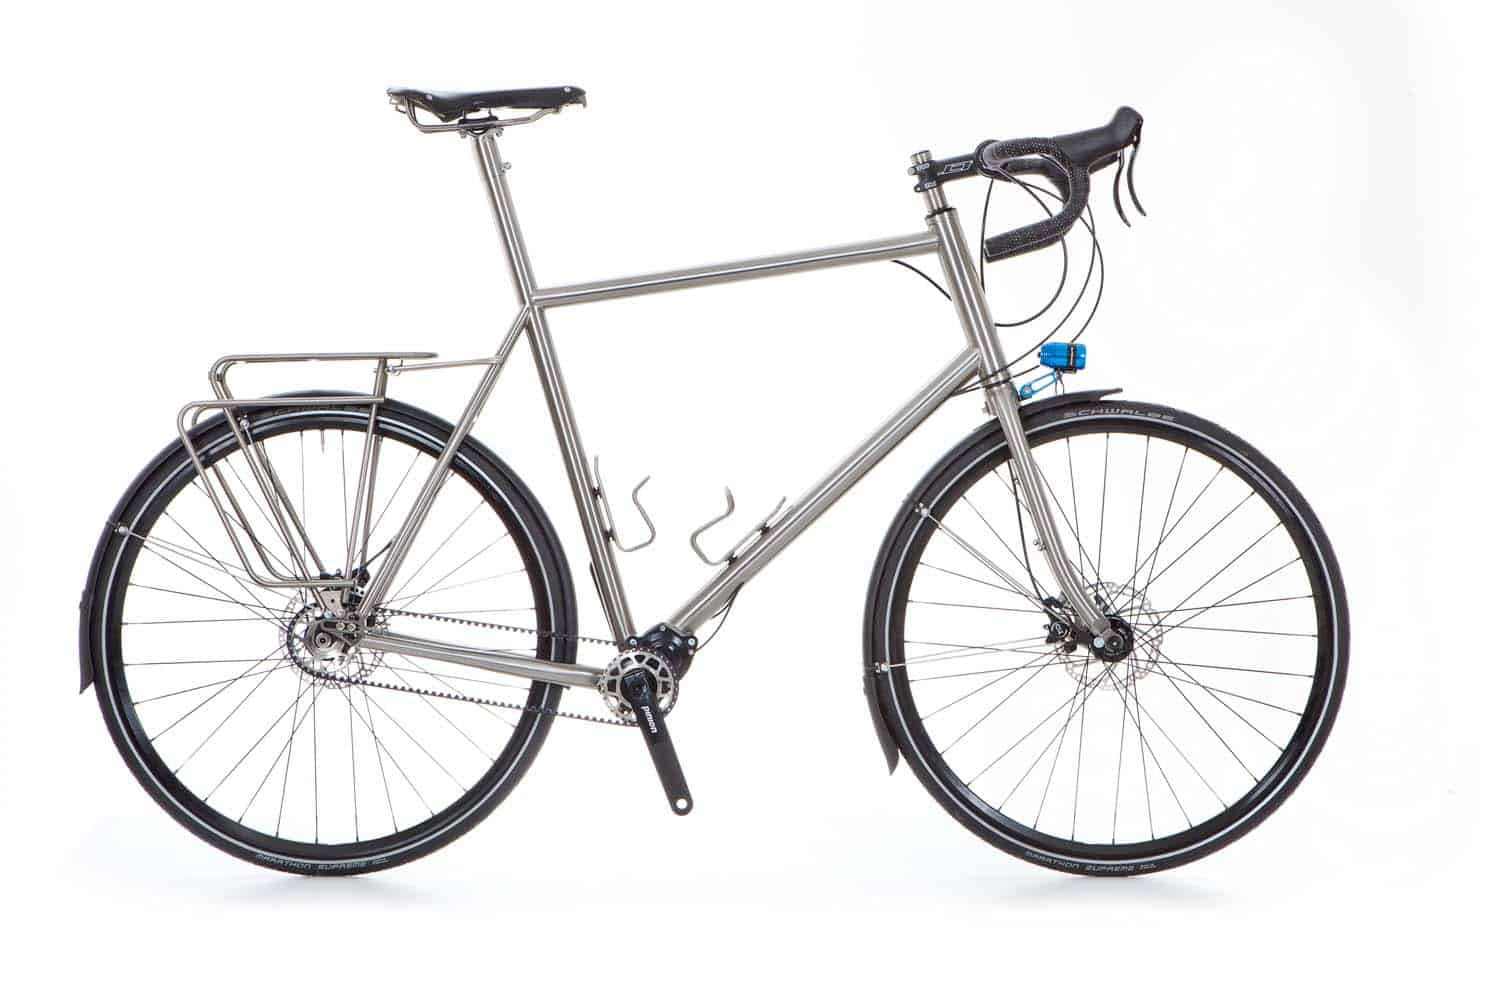 Carbon-Sattel, Fahrradsattel, bicycle saddle